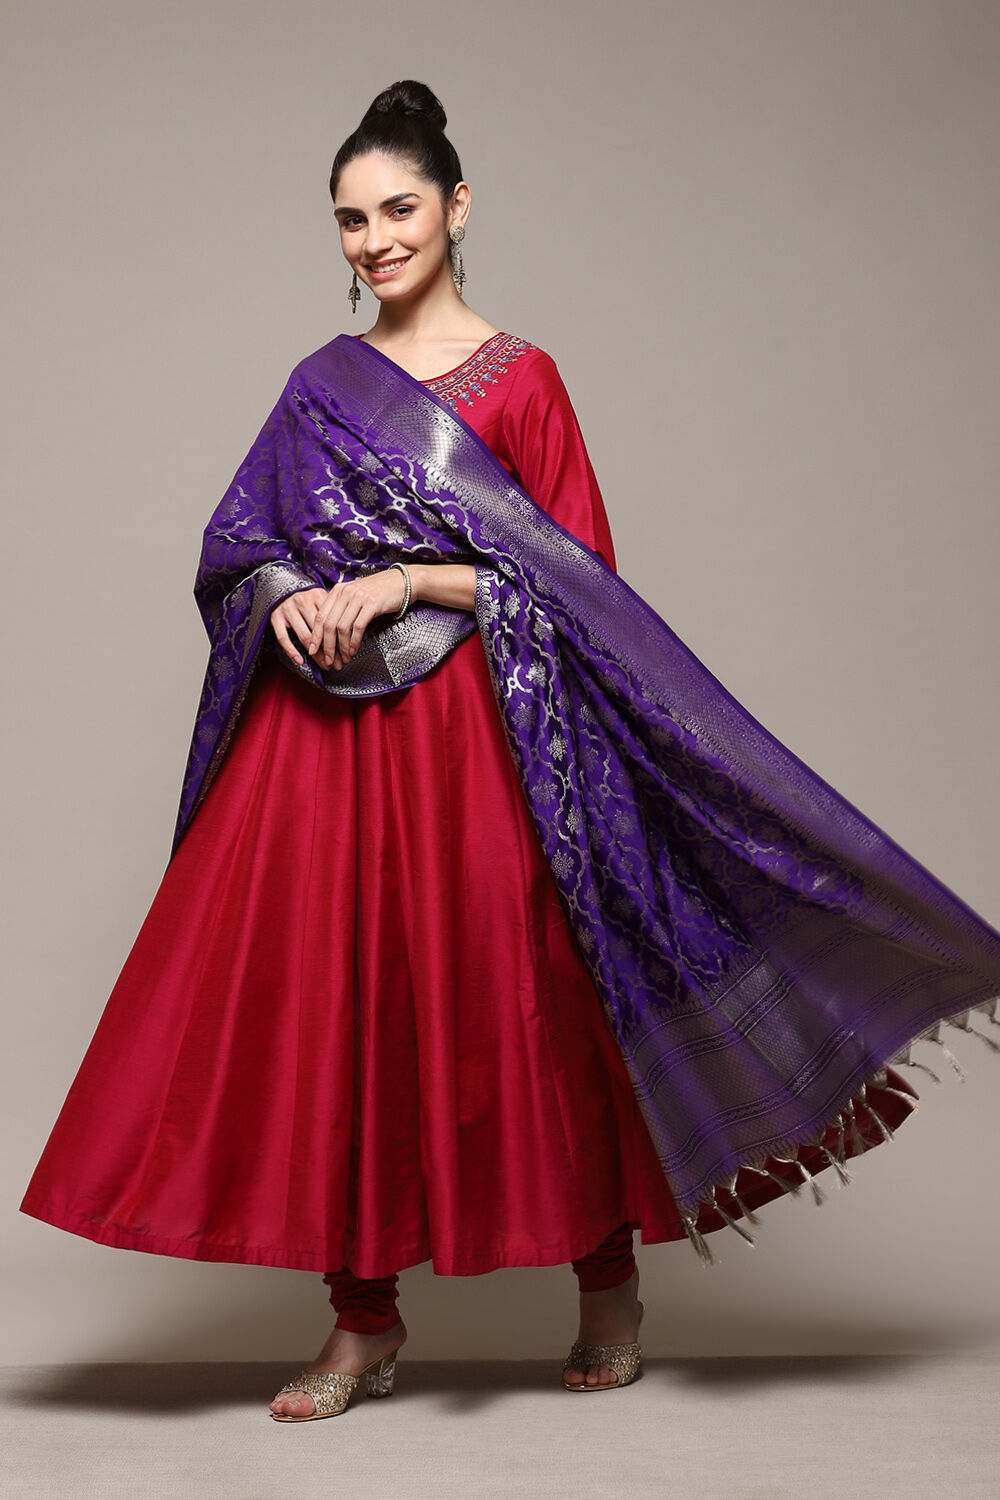 550 Old saree makeover ideas | long dress design, designer dresses indian,  indian gowns dresses